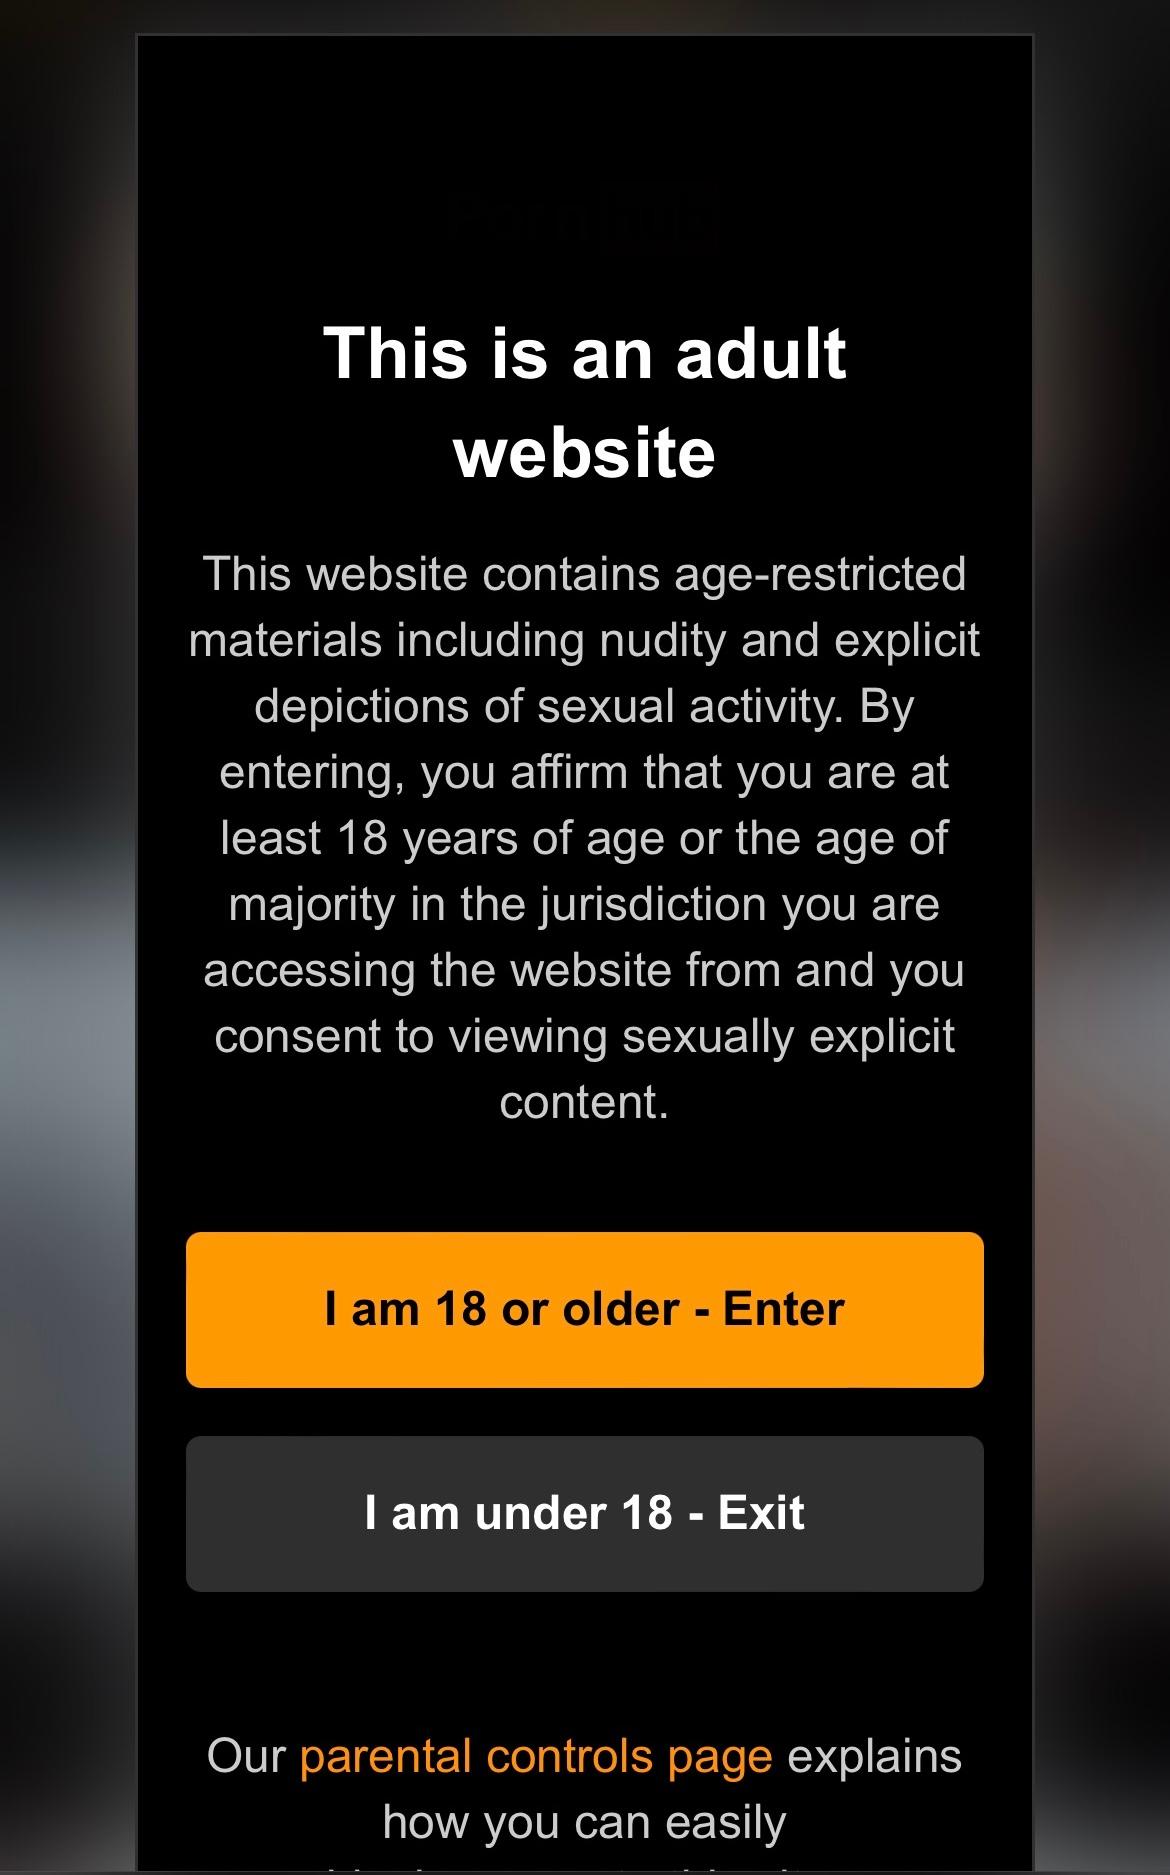 Mensagem de aviso para usuários que tentam acessar sites adultos